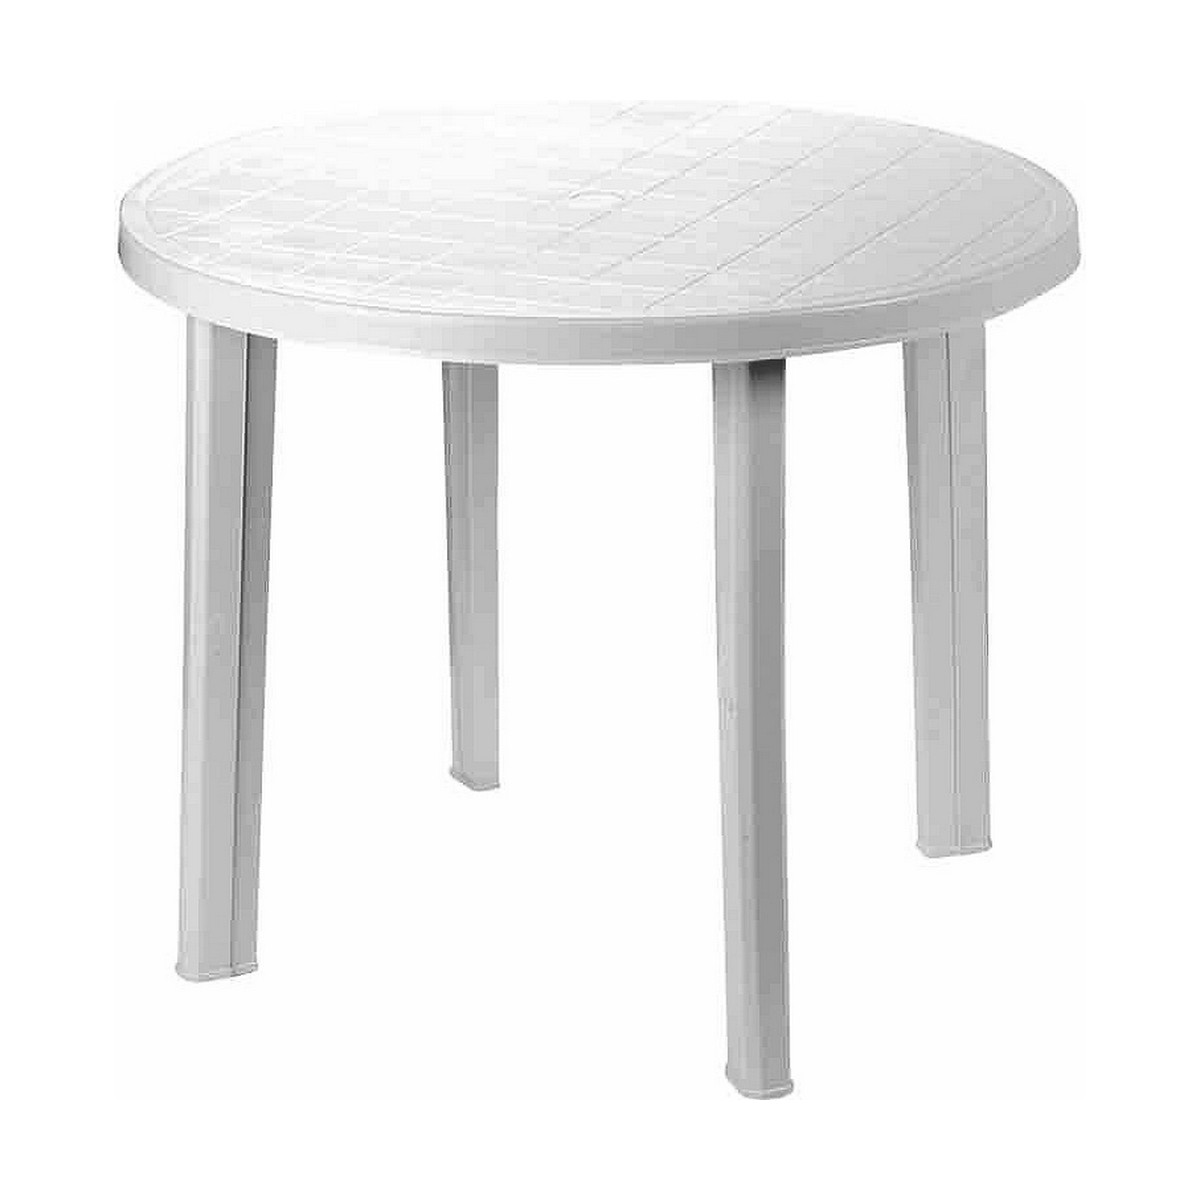 Table d'appoint IPAE Progarden 08330115 Blanc Résine (90 x 90 x 72 cm)